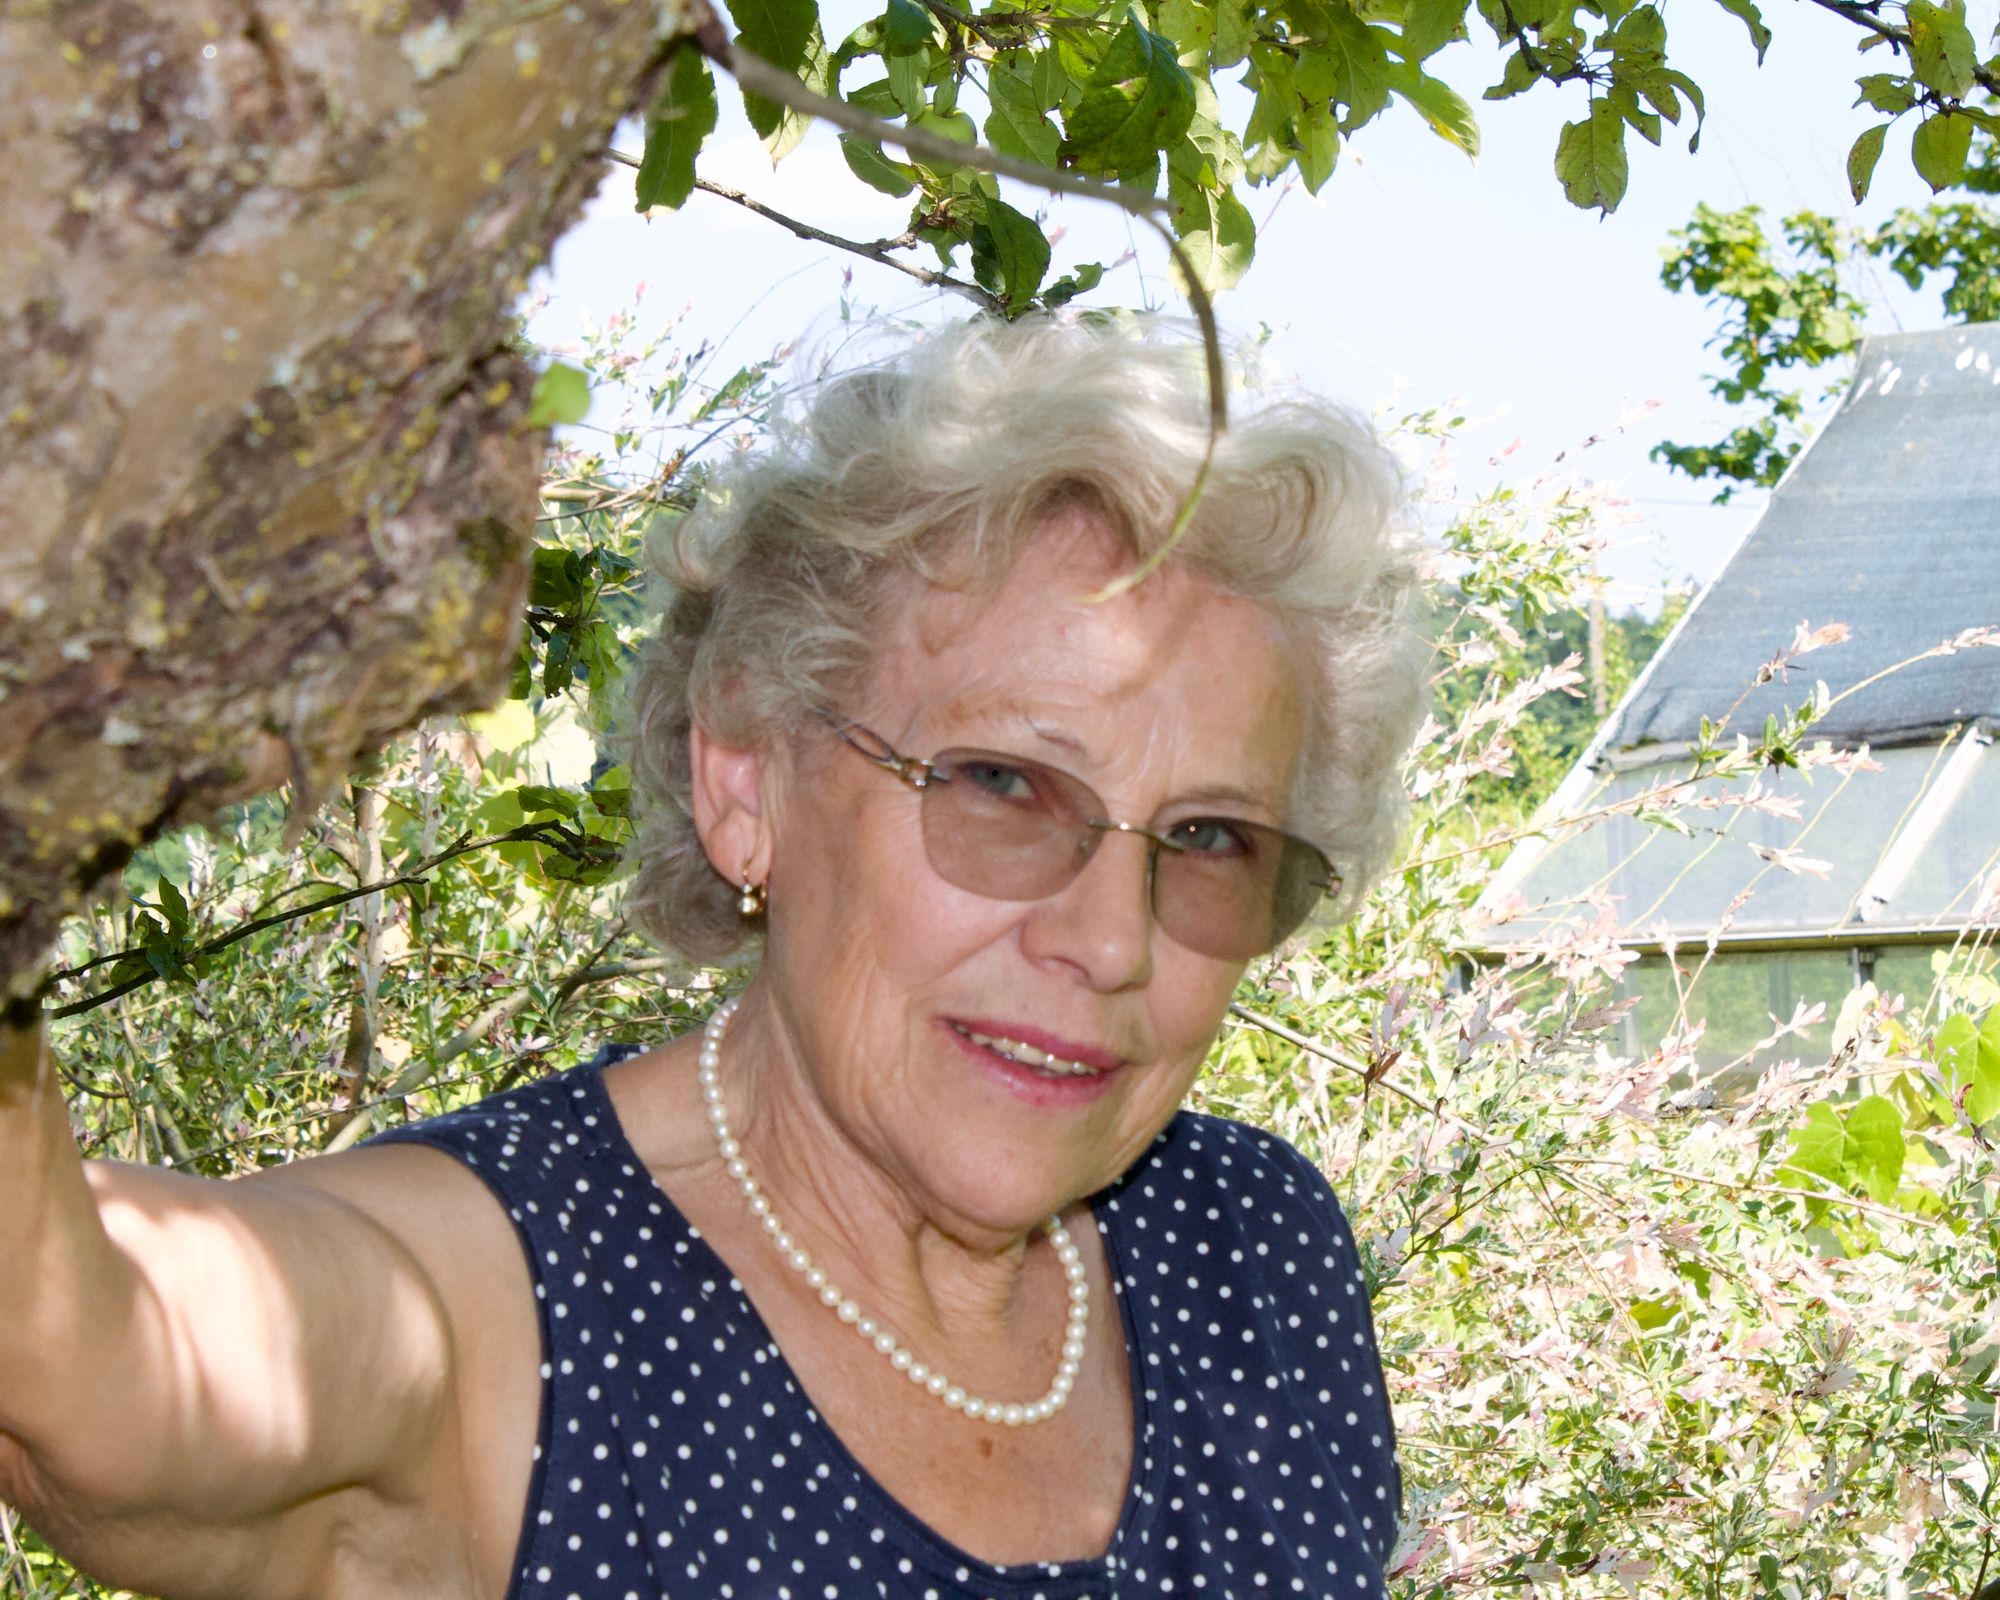 Porträtfoto einer älteren Frau mit kurzen Locken, getupftem Shirt, Perlenkette und einer getönten Brille. Sie steht neben einem Baum vor einer blühenden Hecke.